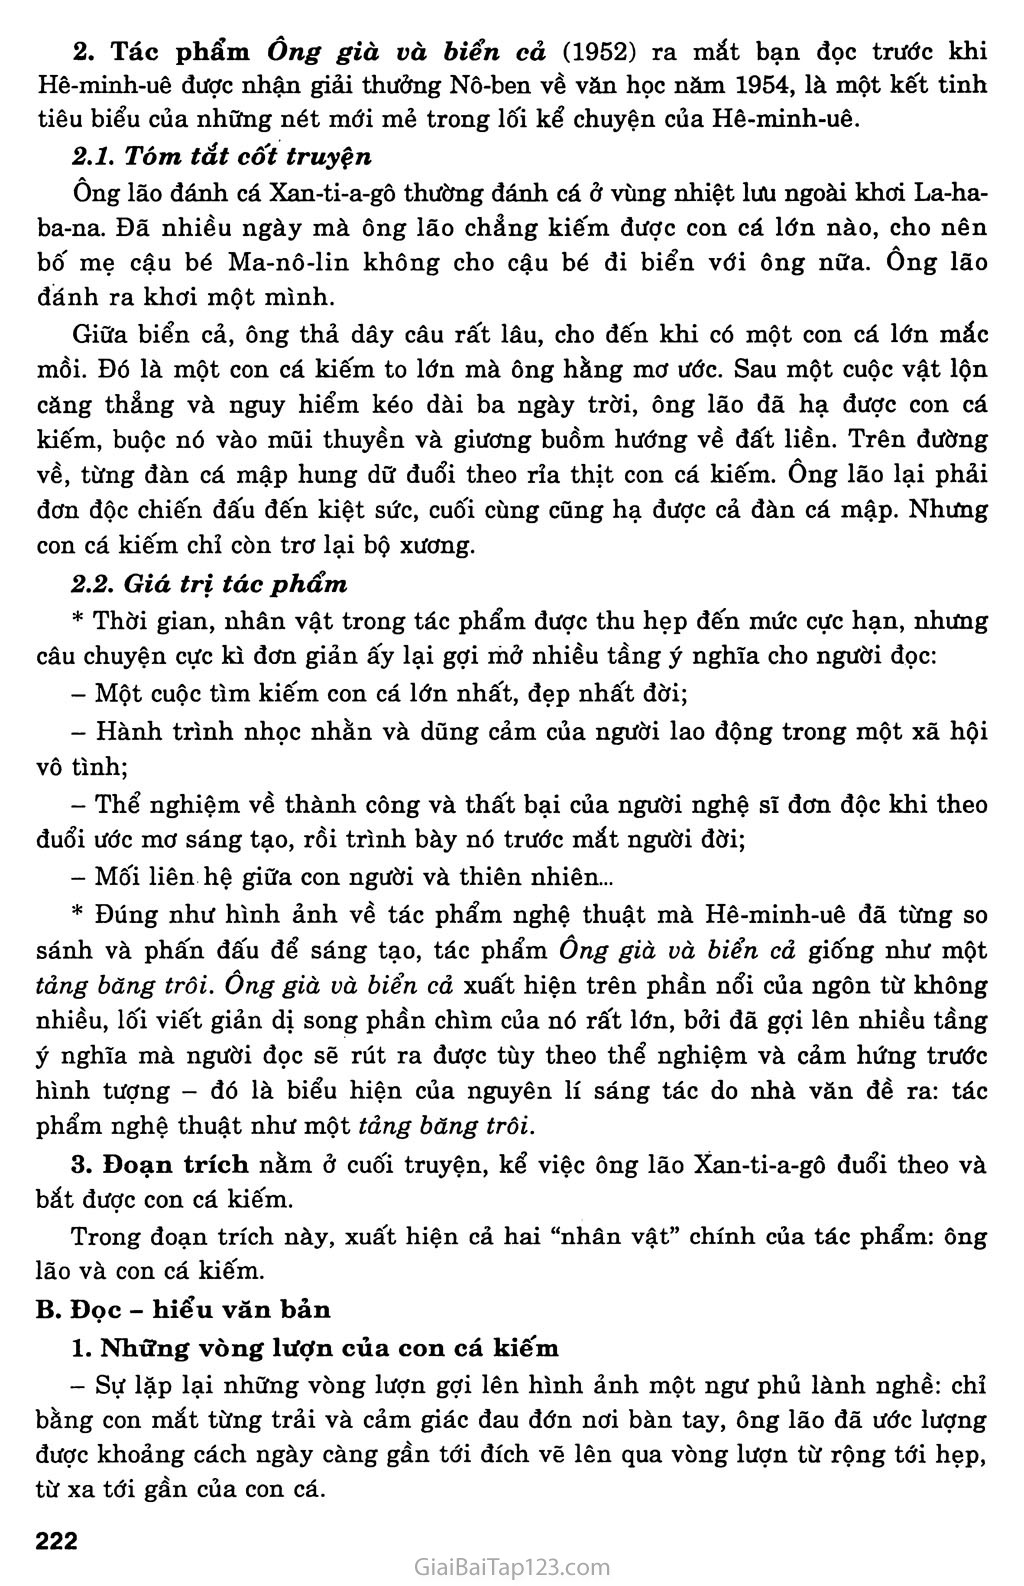 Ông già và biển cả (Hê - minh - uê, 1952) trang 2